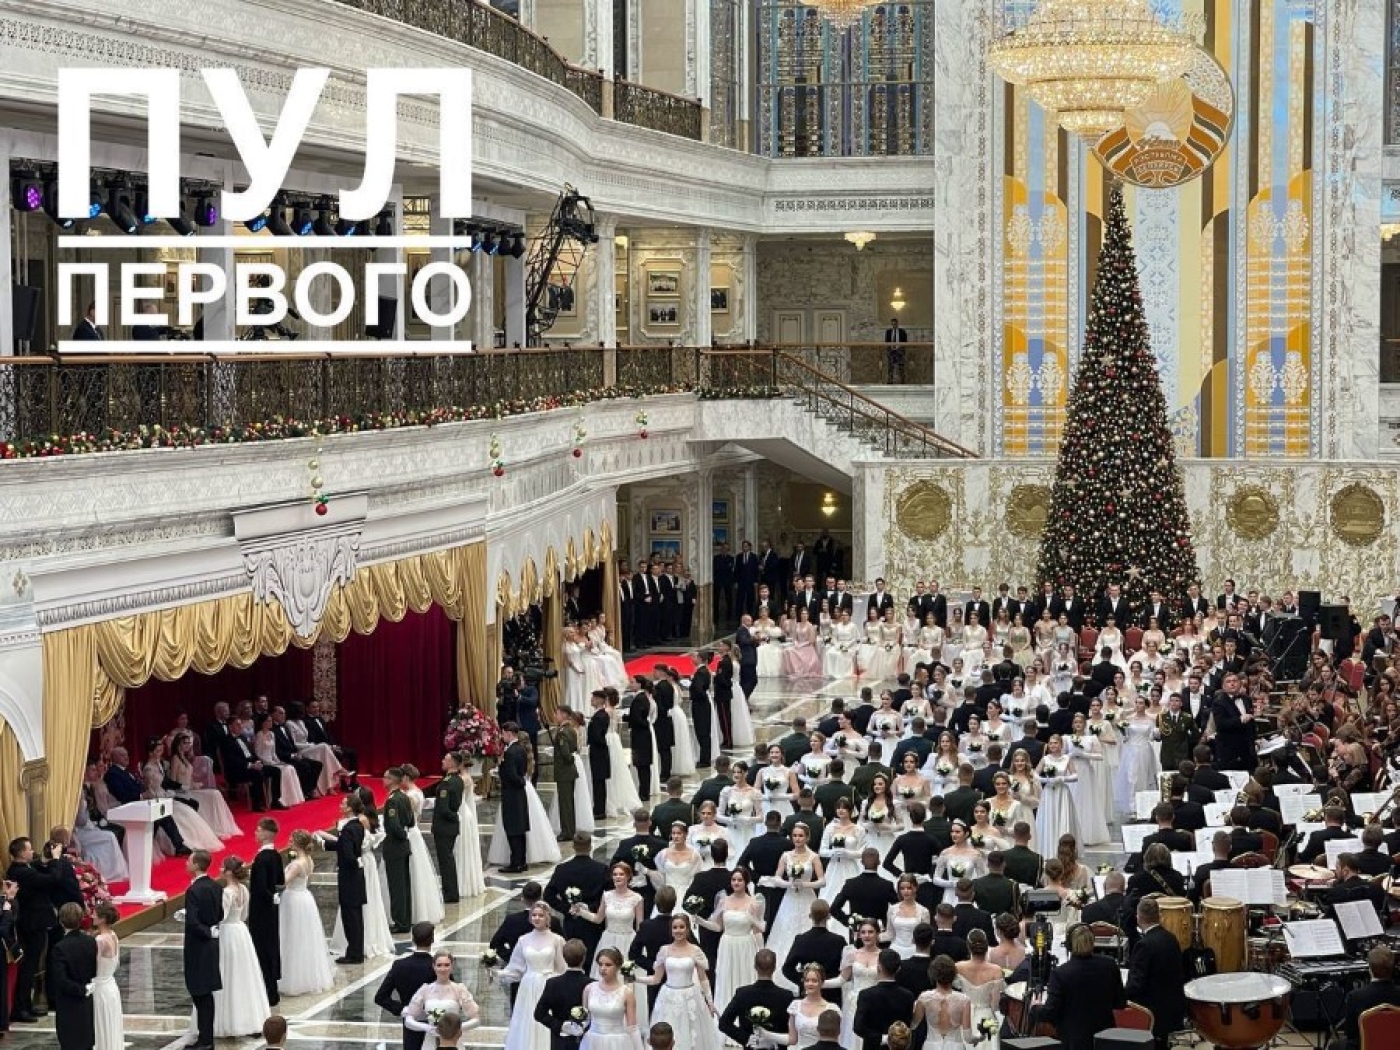 14 представителей Минщины принимают участие в новогоднем балу для молодежи во Дворце Независимости.